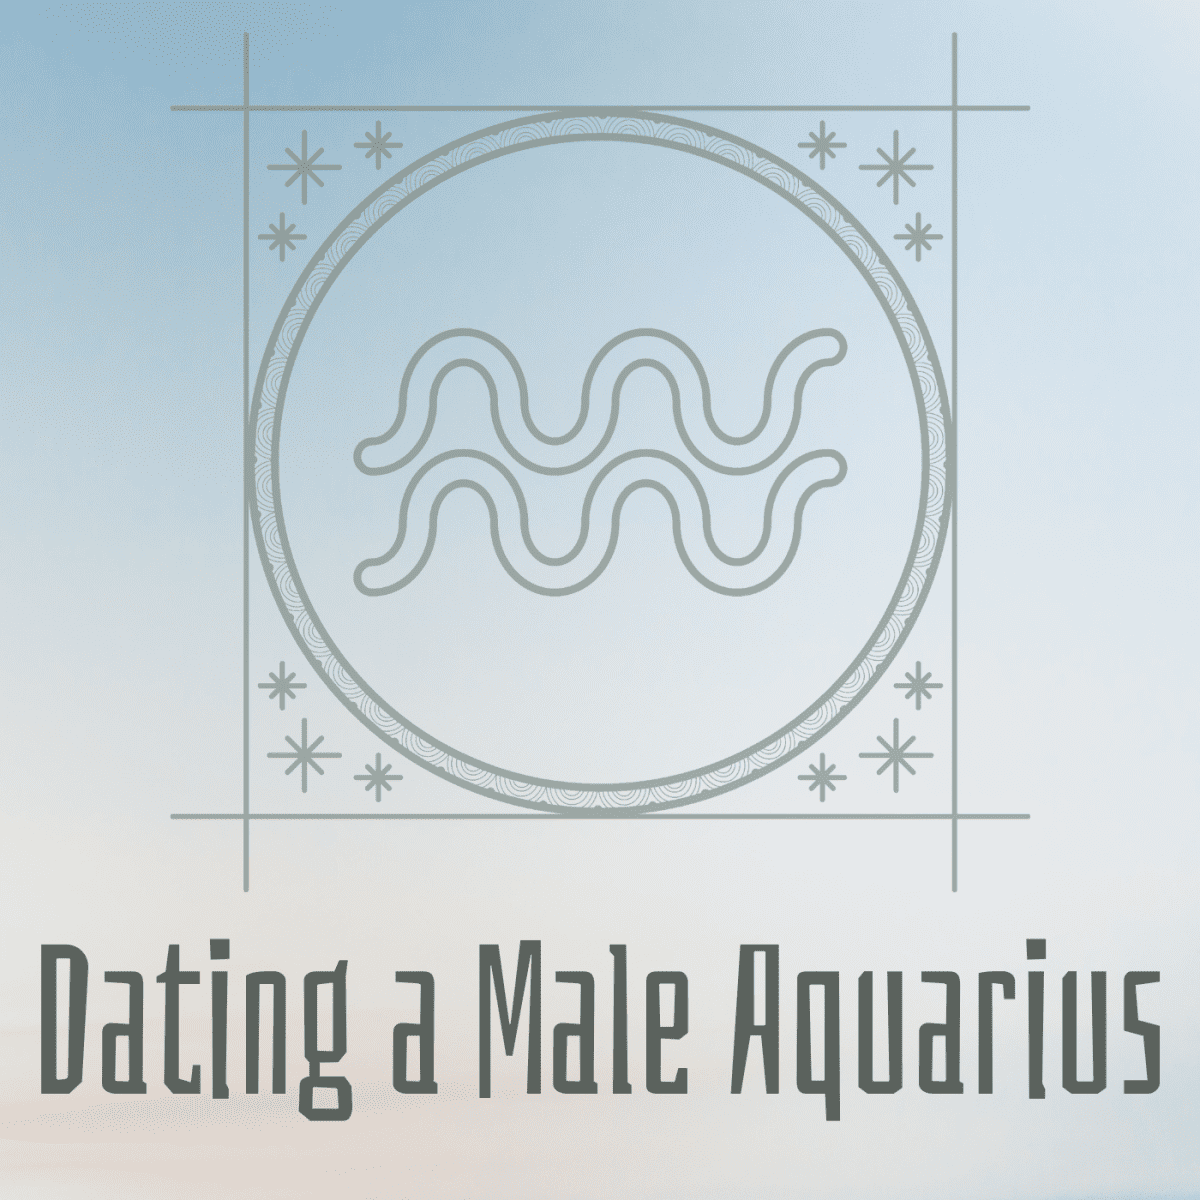 Aquarian Men